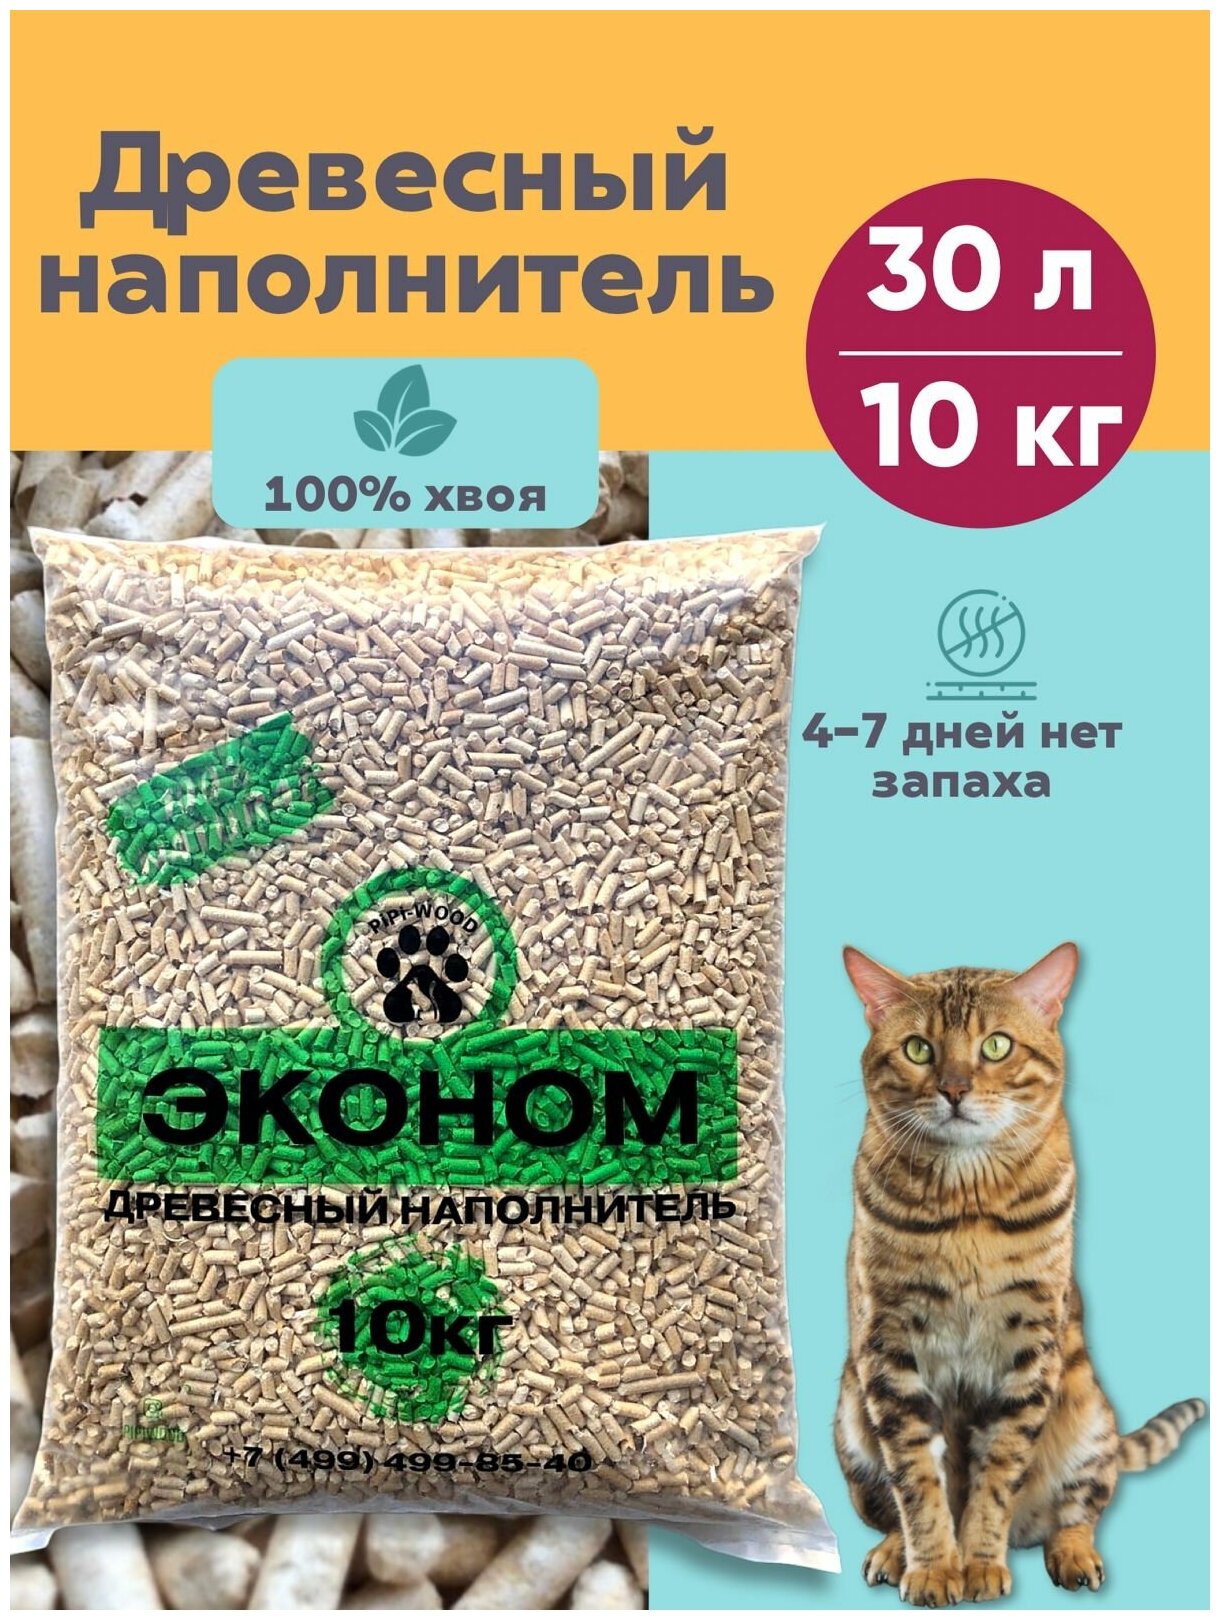 PiPi-WOOD / Древесный наполнитель для кошек/Наполнитель для кошачьего туалета древесный 10кг/Кошачий наполнитель экономъ